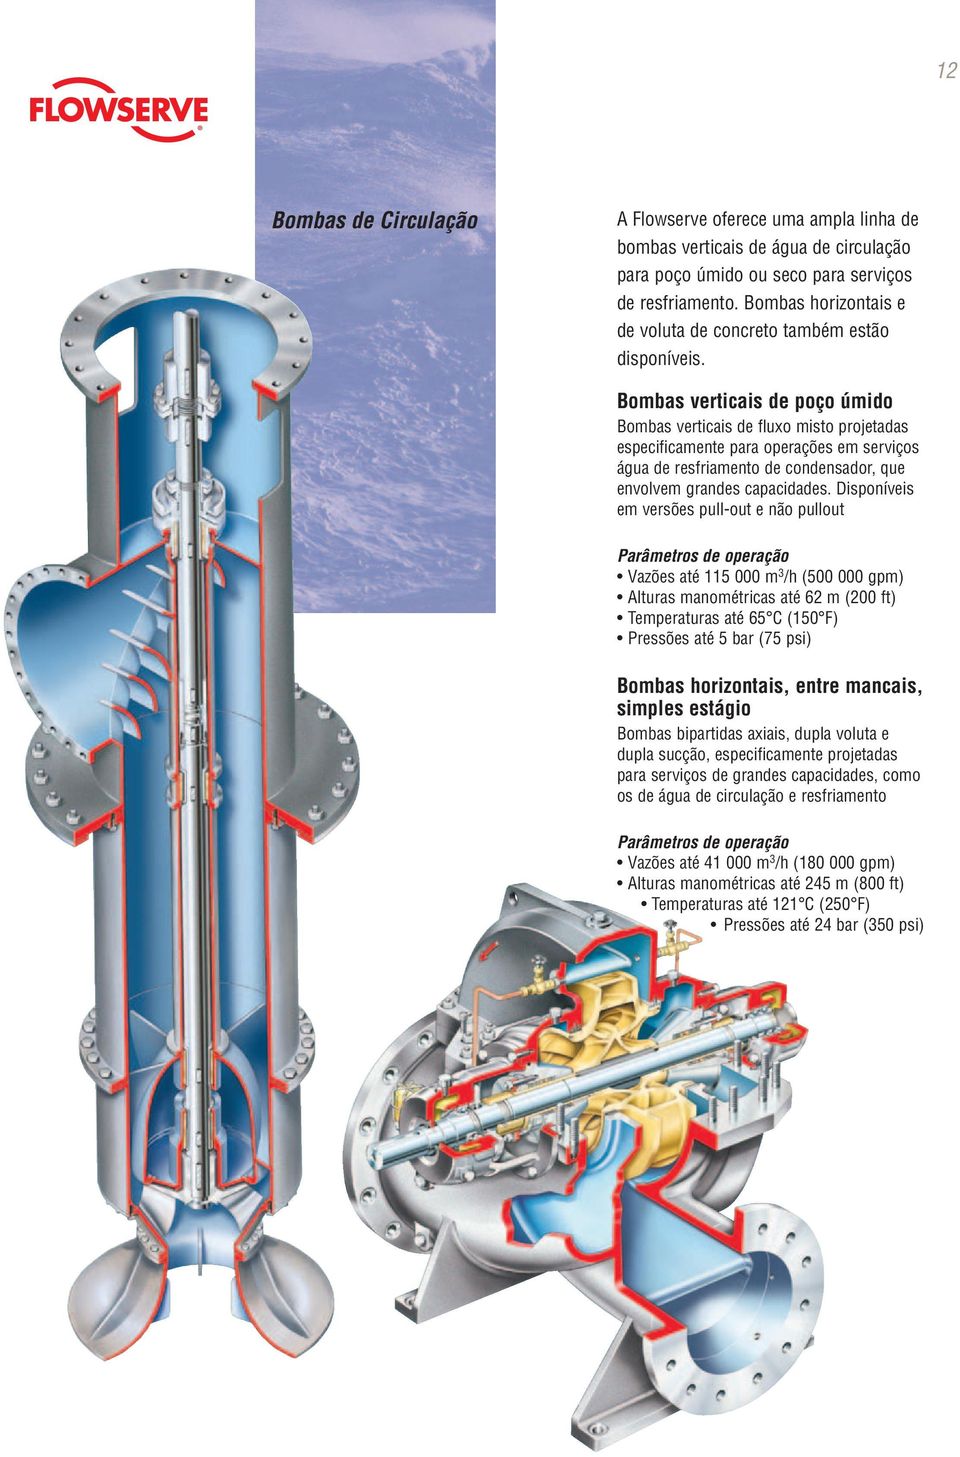 Bombas verticais de poço úmido Bombas verticais de fluxo misto projetadas especificamente para operações em serviços água de resfriamento de condensador, que envolvem grandes capacidades.